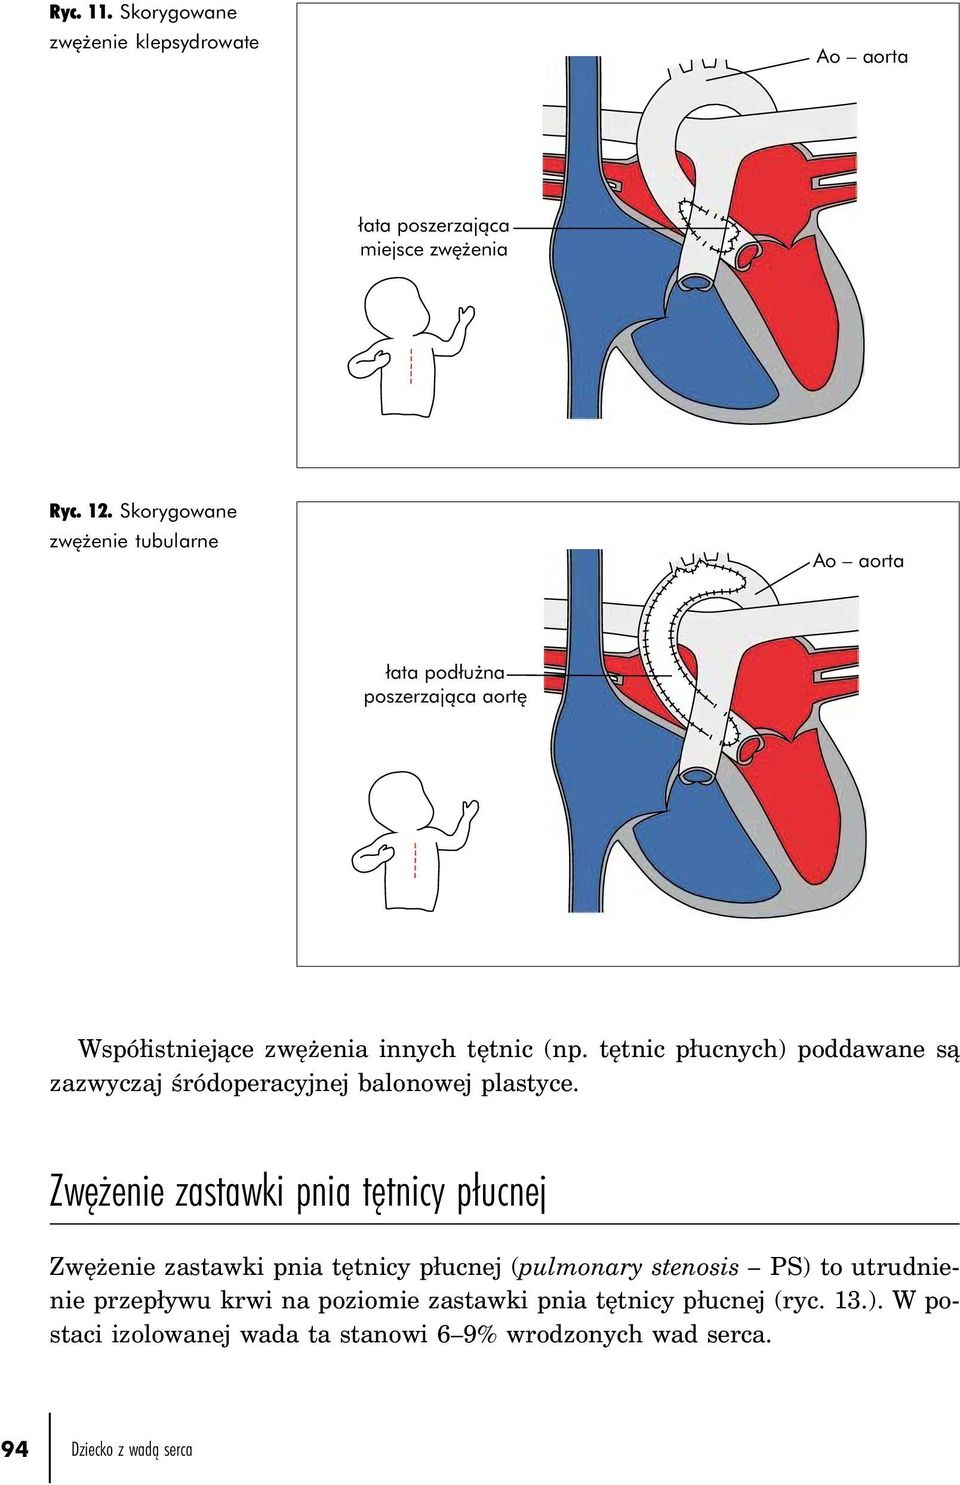 tętnic płucnych) poddawane są zazwyczaj śródoperacyjnej balonowej plastyce.